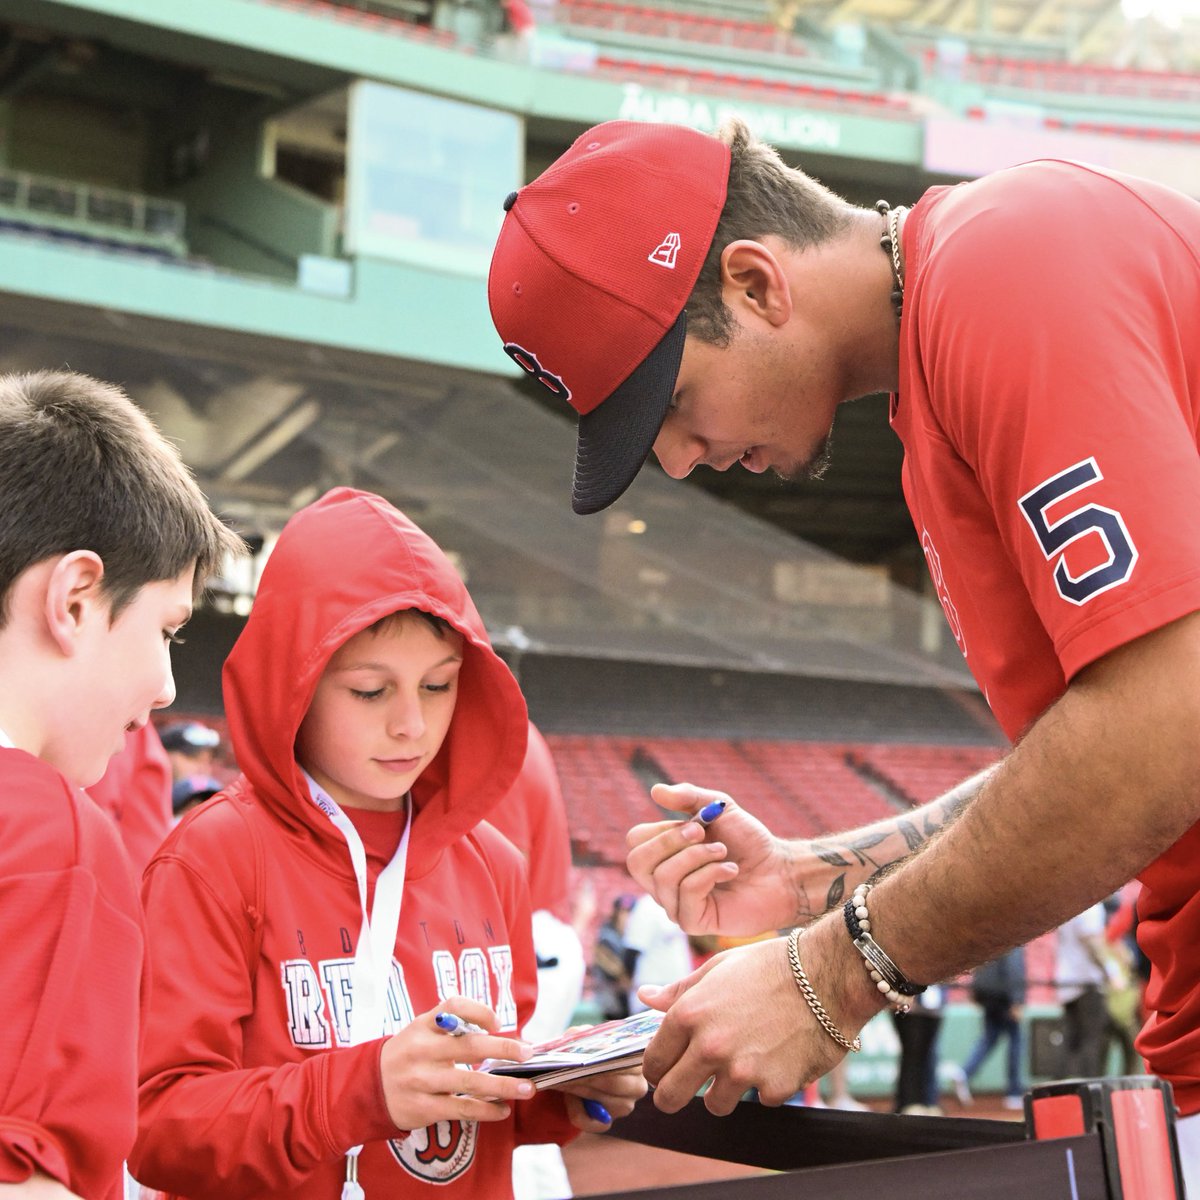 Big-league autographs are the best
🤩🖊️